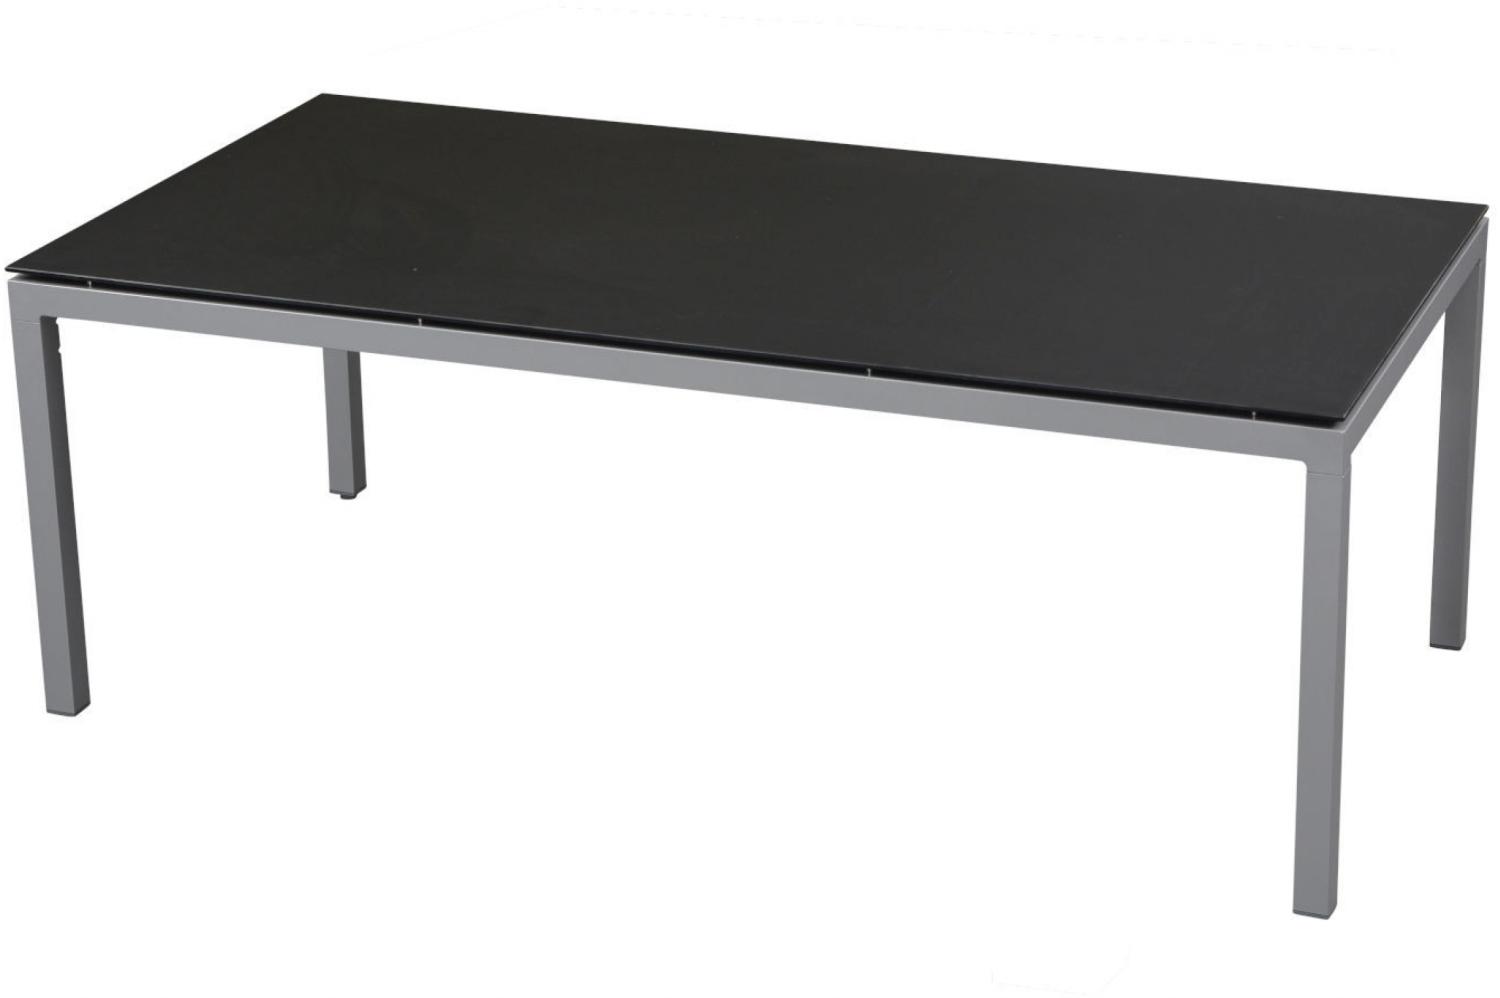 Inko Gartentisch Aluminium graphit 200x100 cm Terrassentisch Tischplatte nach Wahl Deropal weiß Bild 1